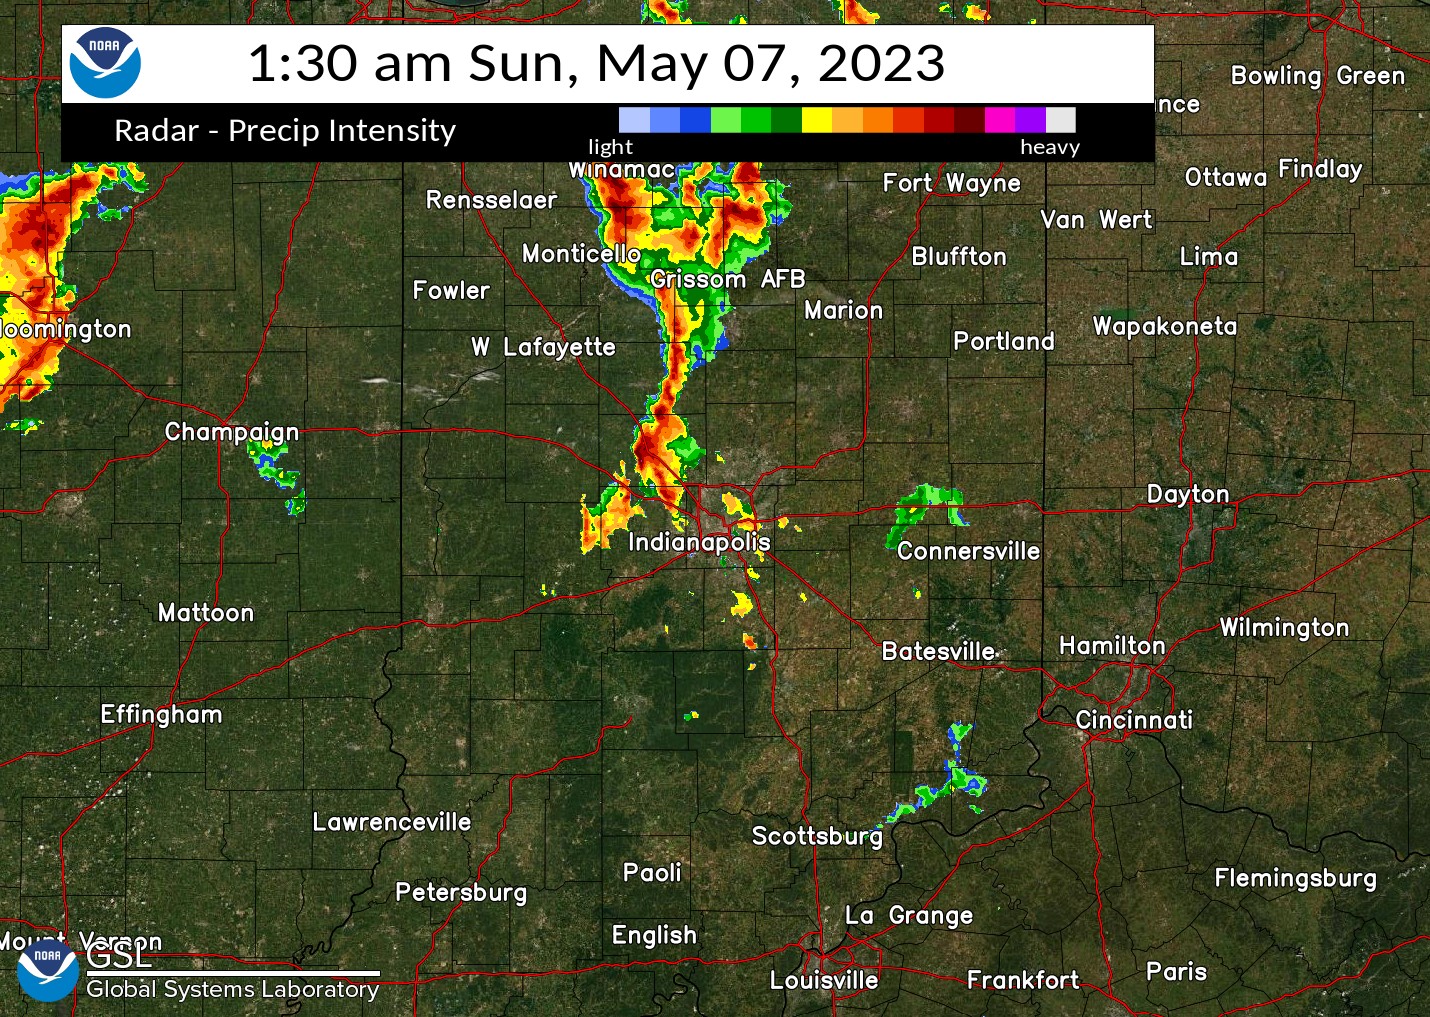 Radar Image at 130 AM EDT May 7